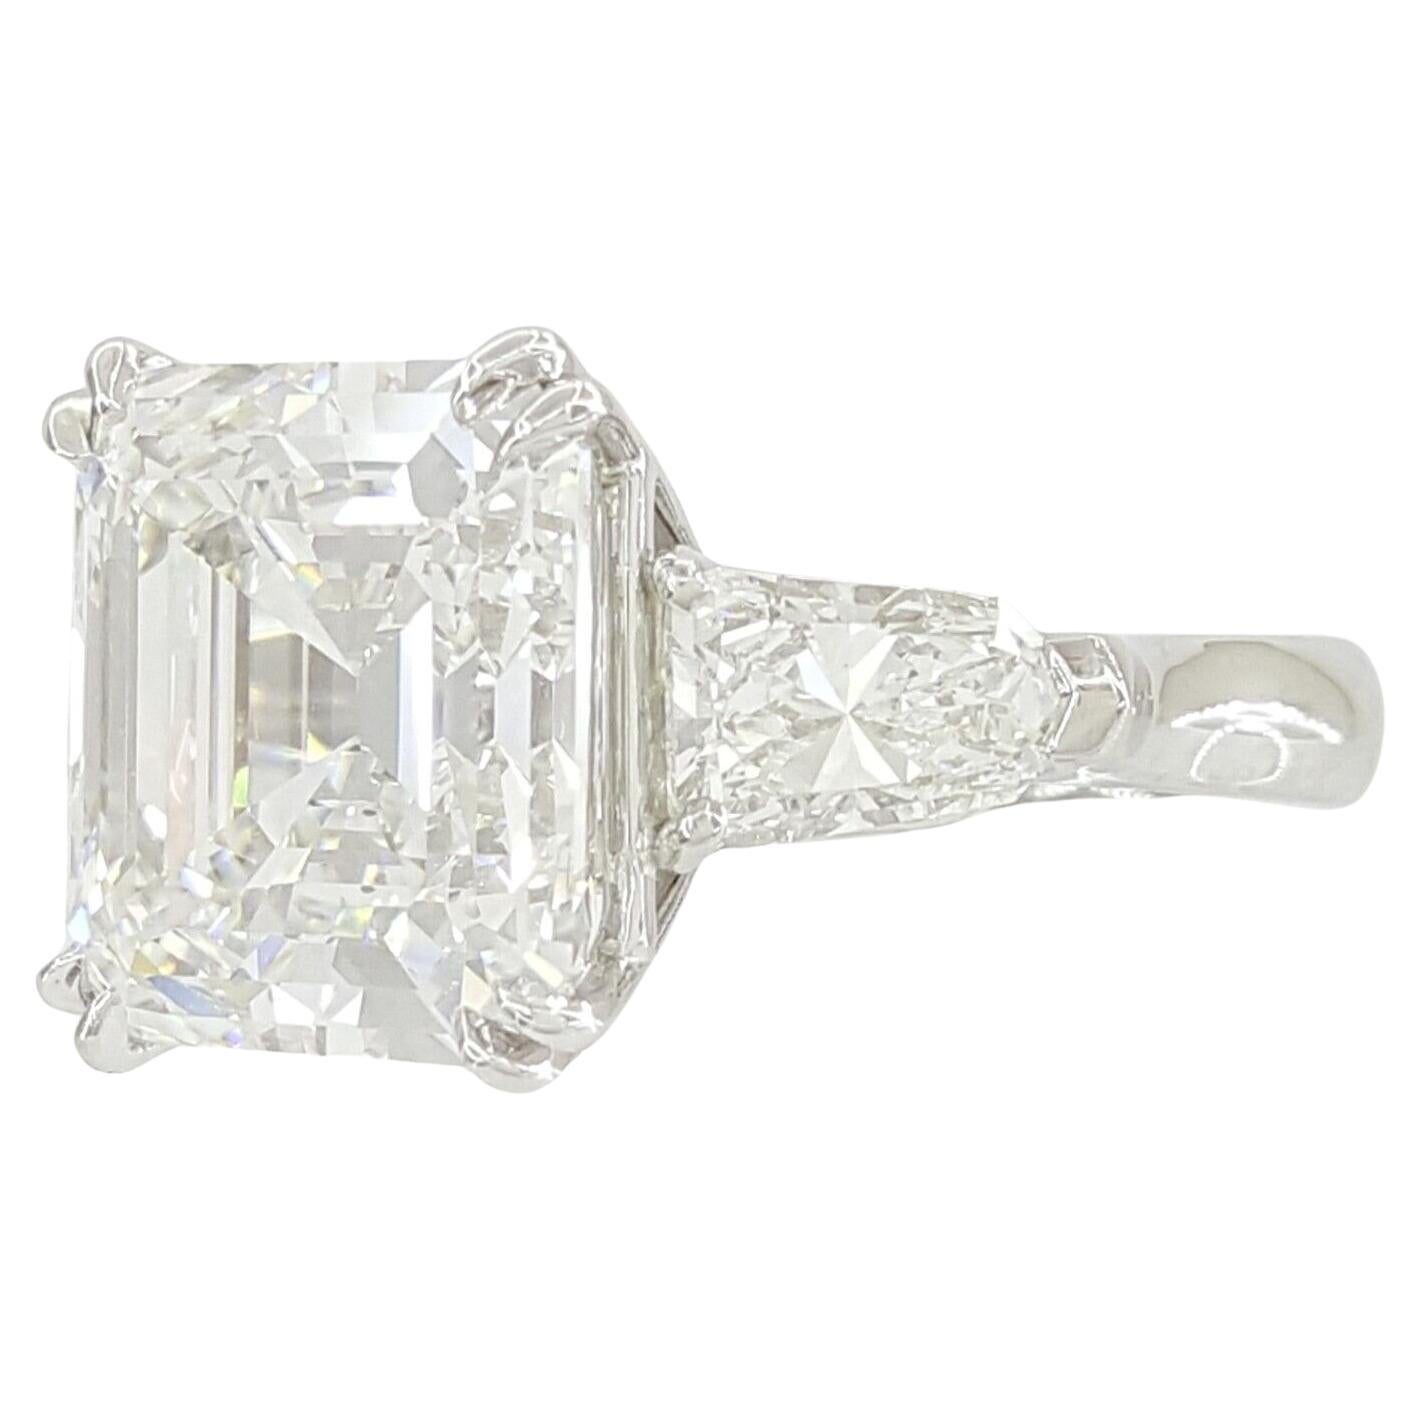 10 carat asscher cut diamond